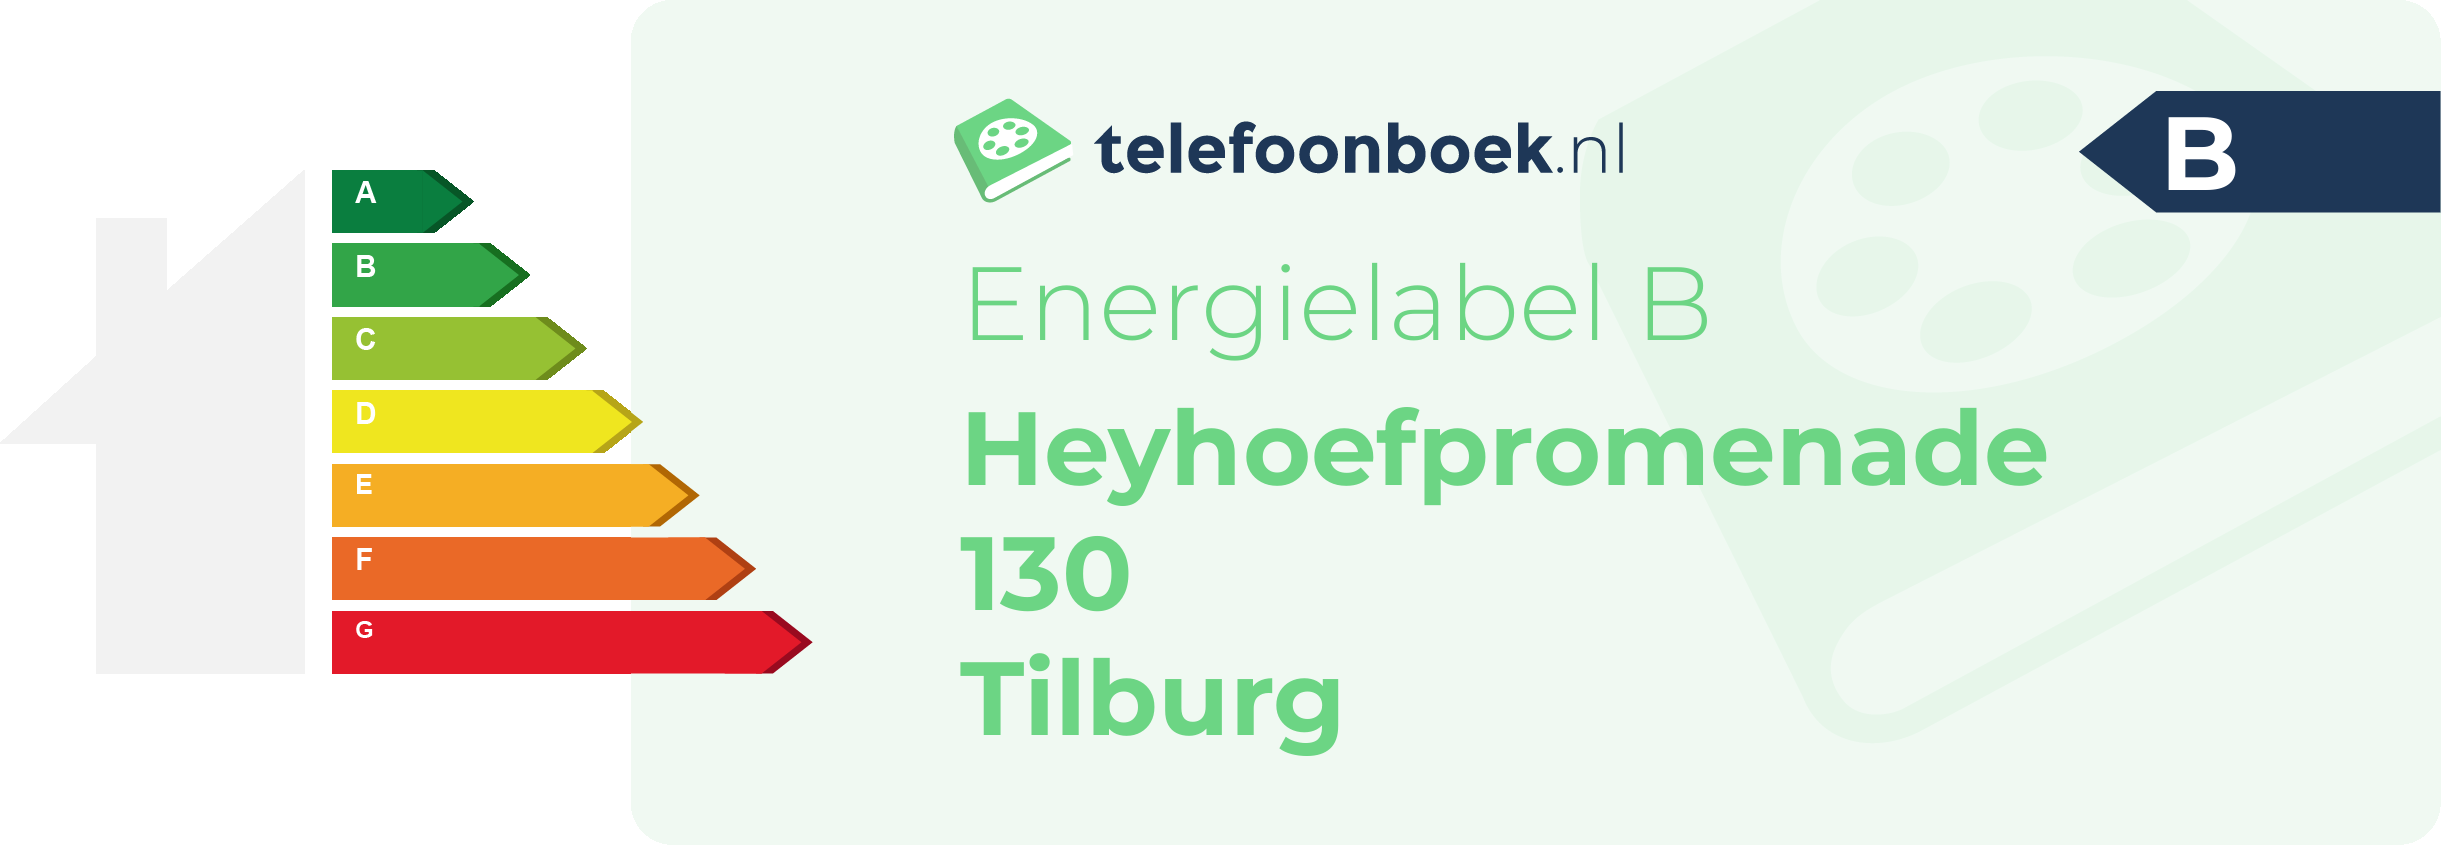 Energielabel Heyhoefpromenade 130 Tilburg